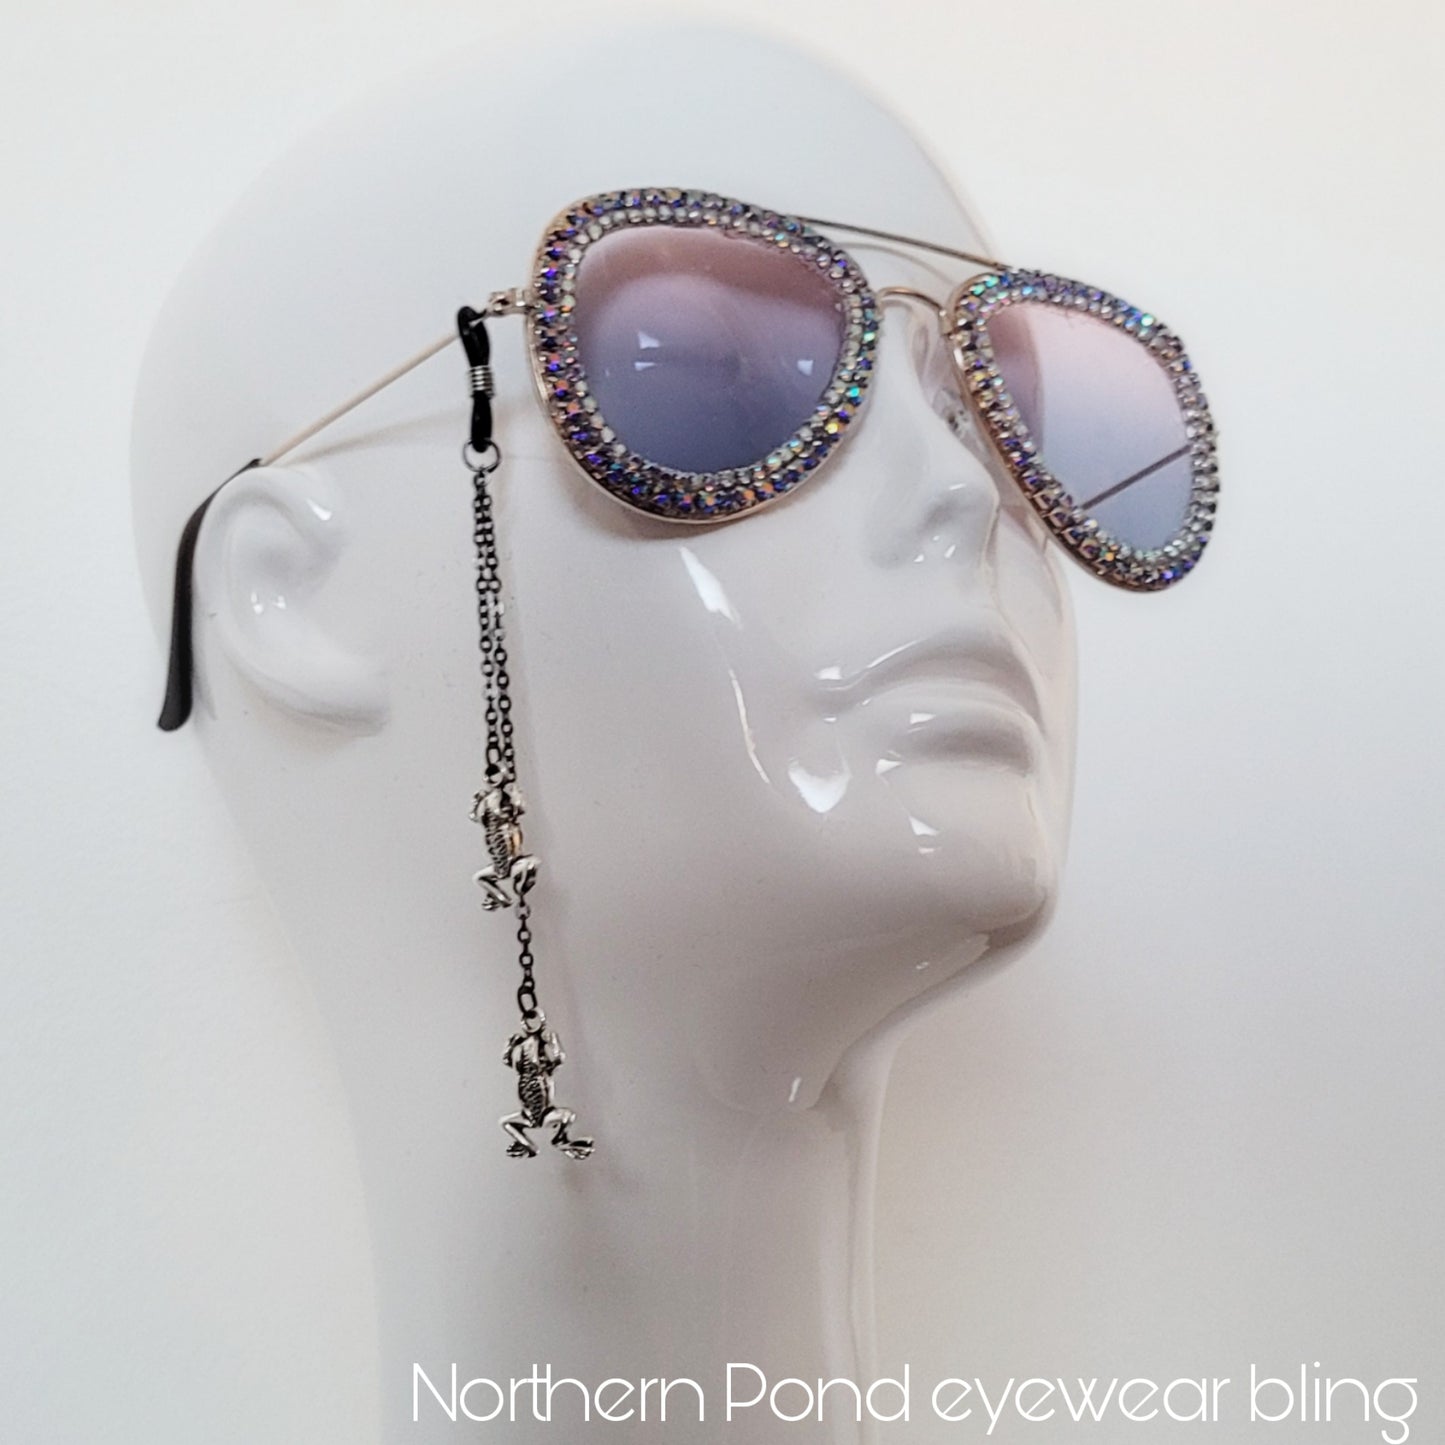 Northern Pond Eyewear Bling